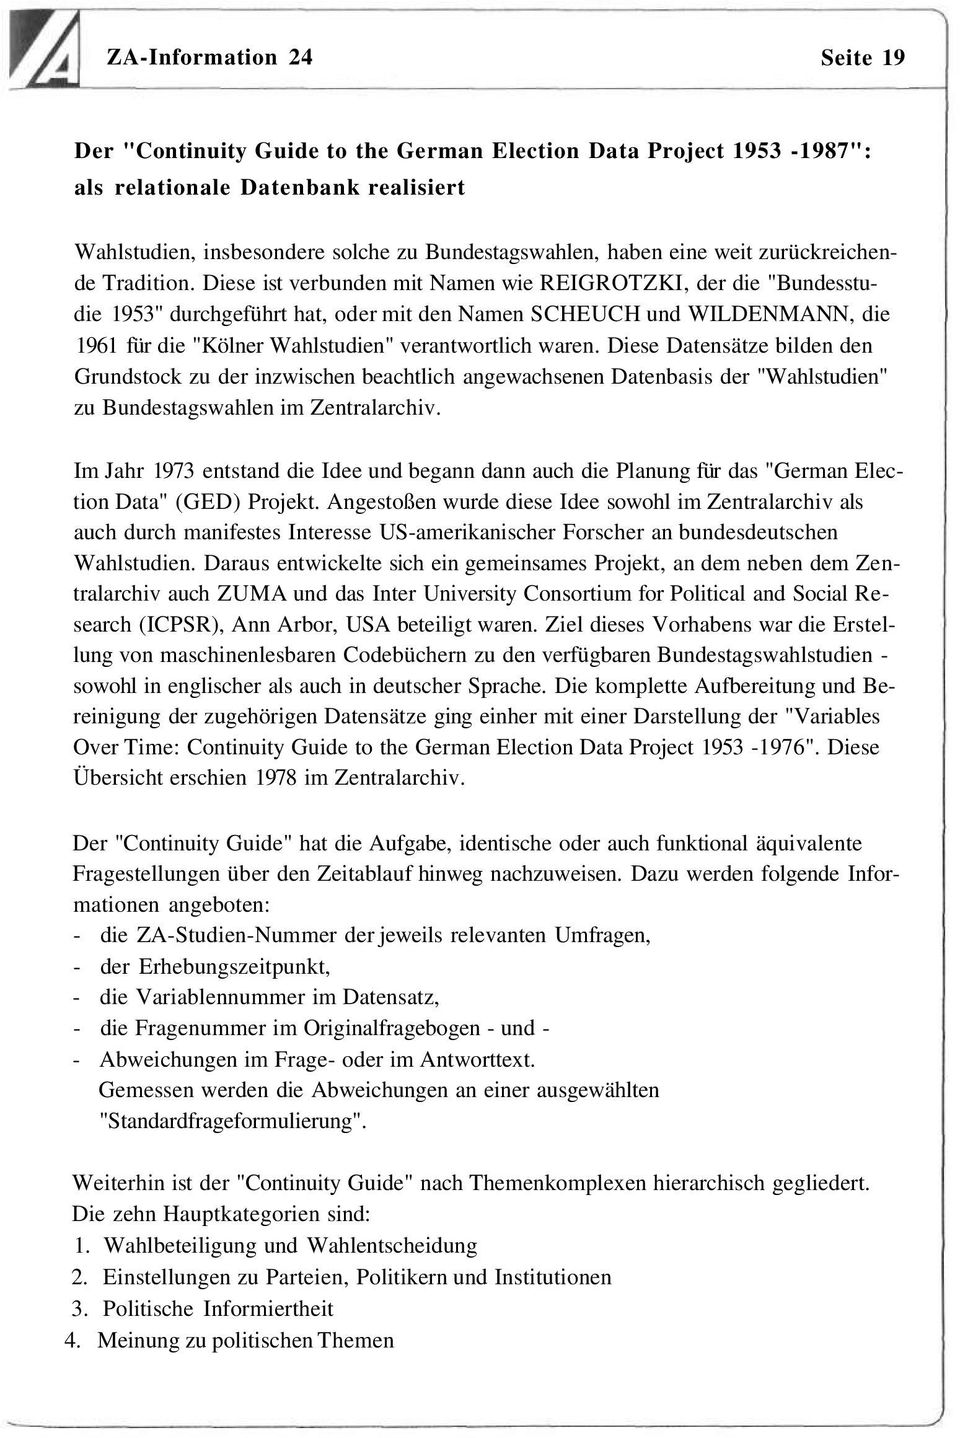 Diese ist verbunden mit Namen wie REIGROTZKI, der die "Bundesstudie 1953" durchgeführt hat, oder mit den Namen SCHEUCH und WILDENMANN, die 1961 für die "Kölner Wahlstudien" verantwortlich waren.